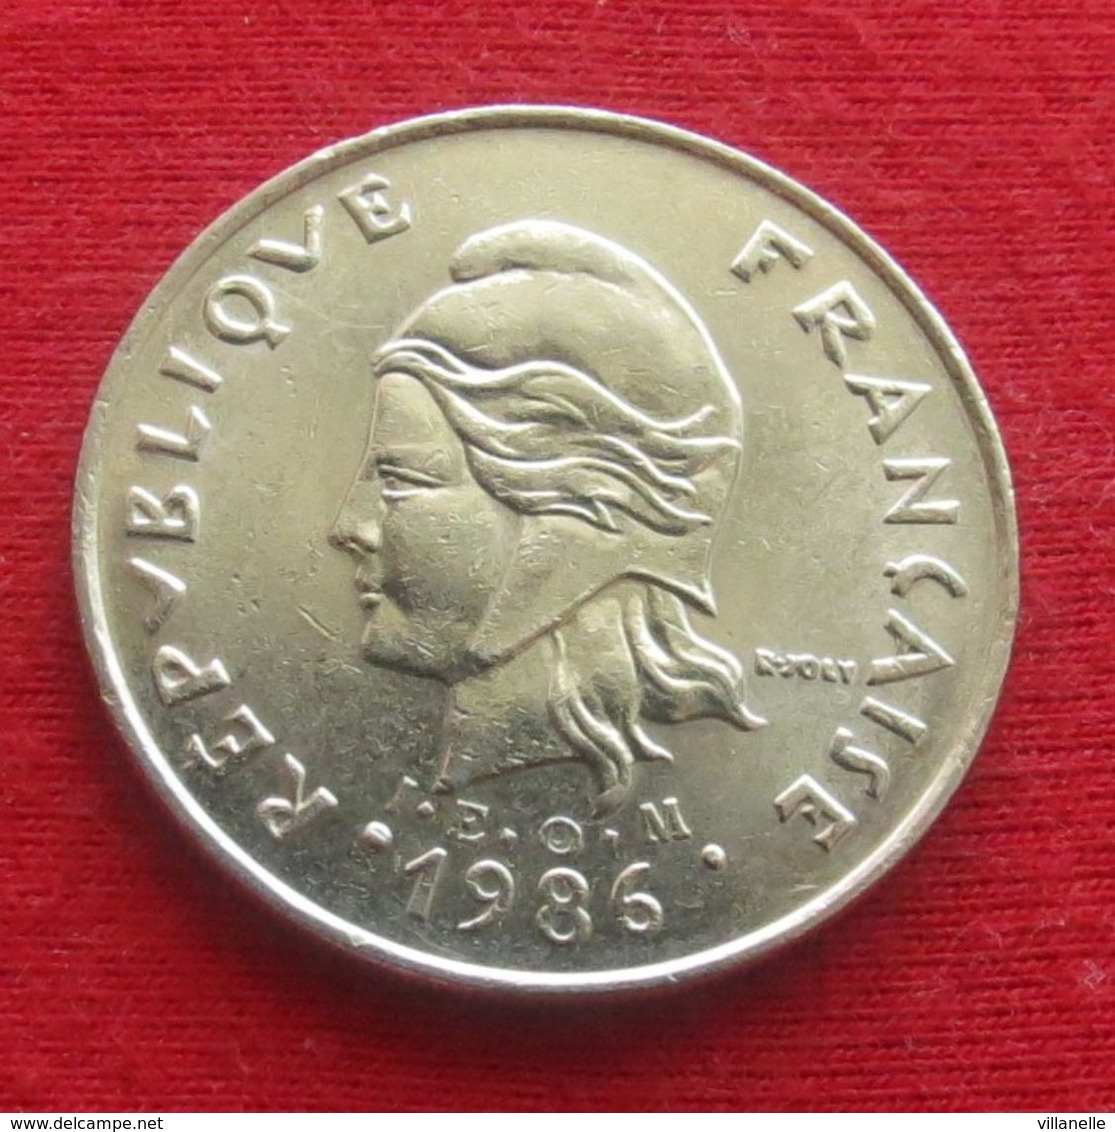 French Polynesia 20 Francs 1986 KM# 9 Polynesie Polinesia - Polynésie Française